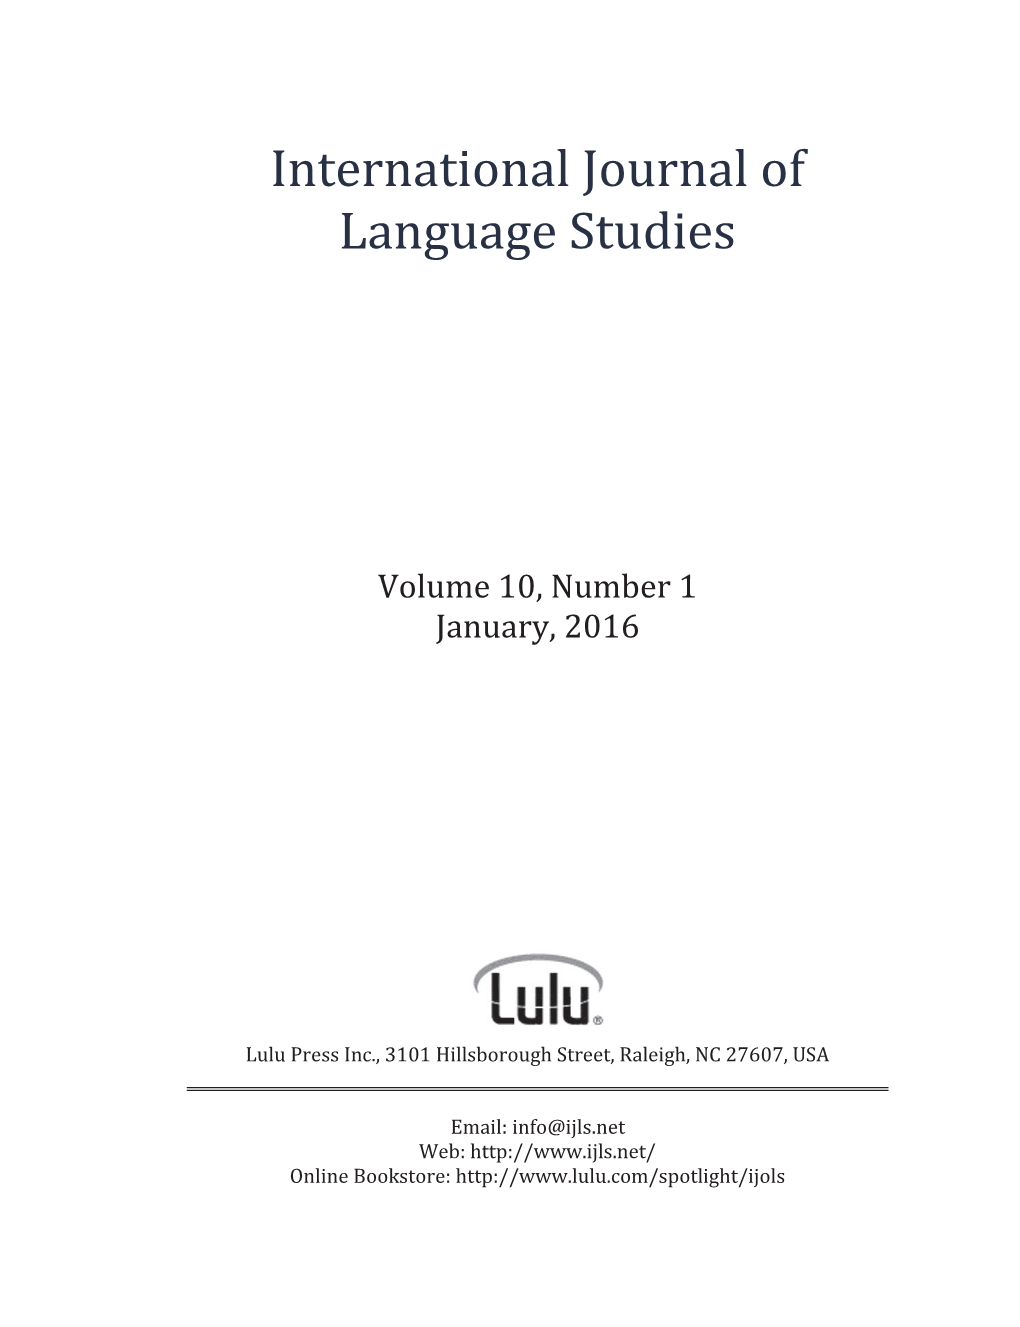 INTERNATIONAL JOURNAL of LANGUAGE STUDIES Ǣʹͳͷ͹ǧͷͺͻͺȊ”‹–Ȍ ‡ Ǣʹͳͷ͹ǧͷͻͳͳȊŽ‹‡Ȍ ̹ʹͳͳ͸Ǧ‘Šƒƒ†Ž‹ƒŽƒ‹‘†‘—•Šƒ All Rights Reserved